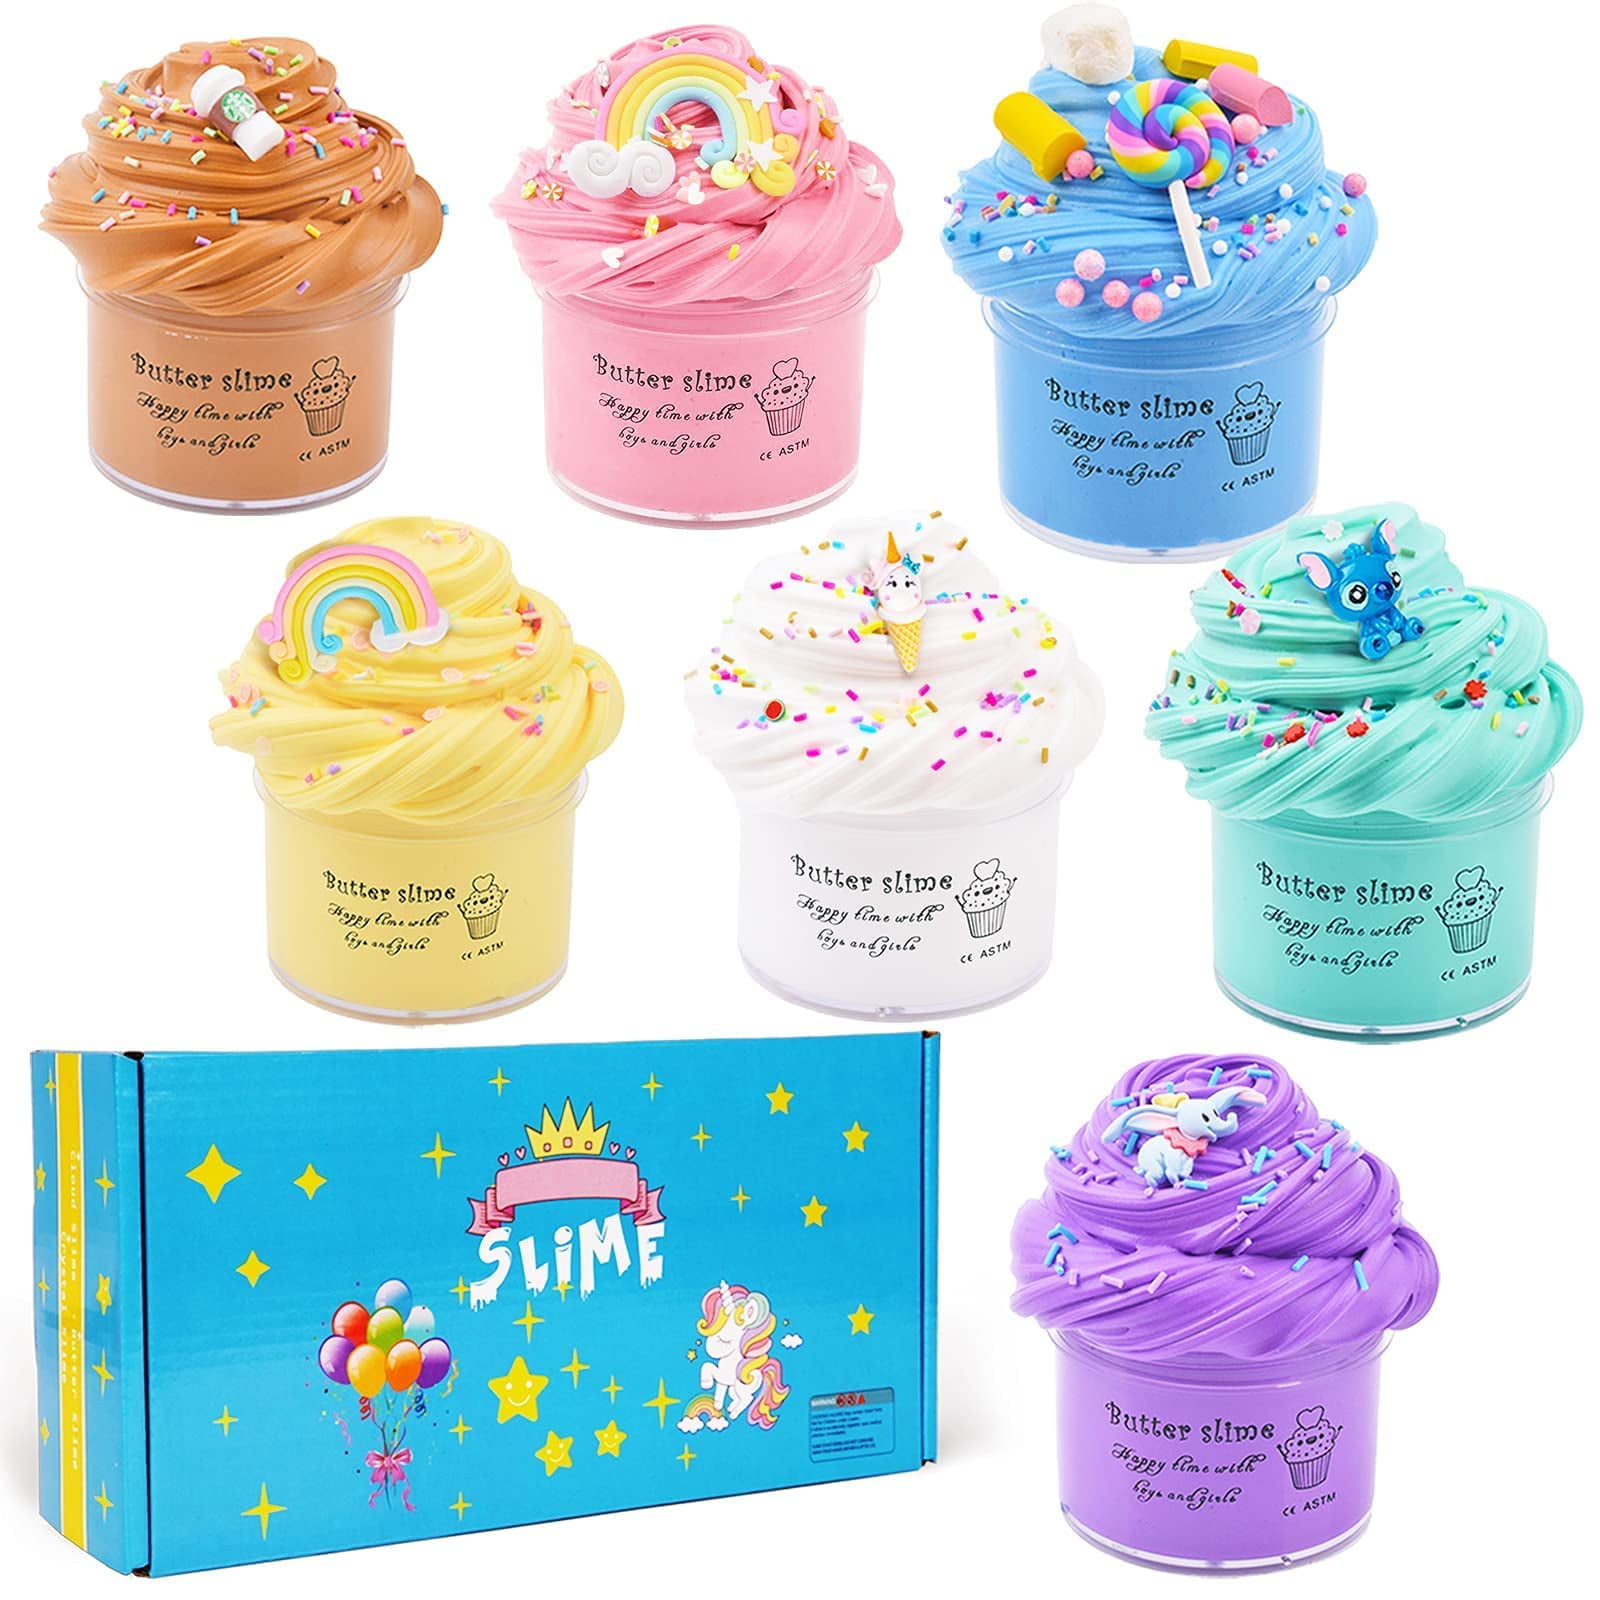 Fun Kidz gift butter slime kit for girls 10-12, funkidz ice cream fluffy slime  making